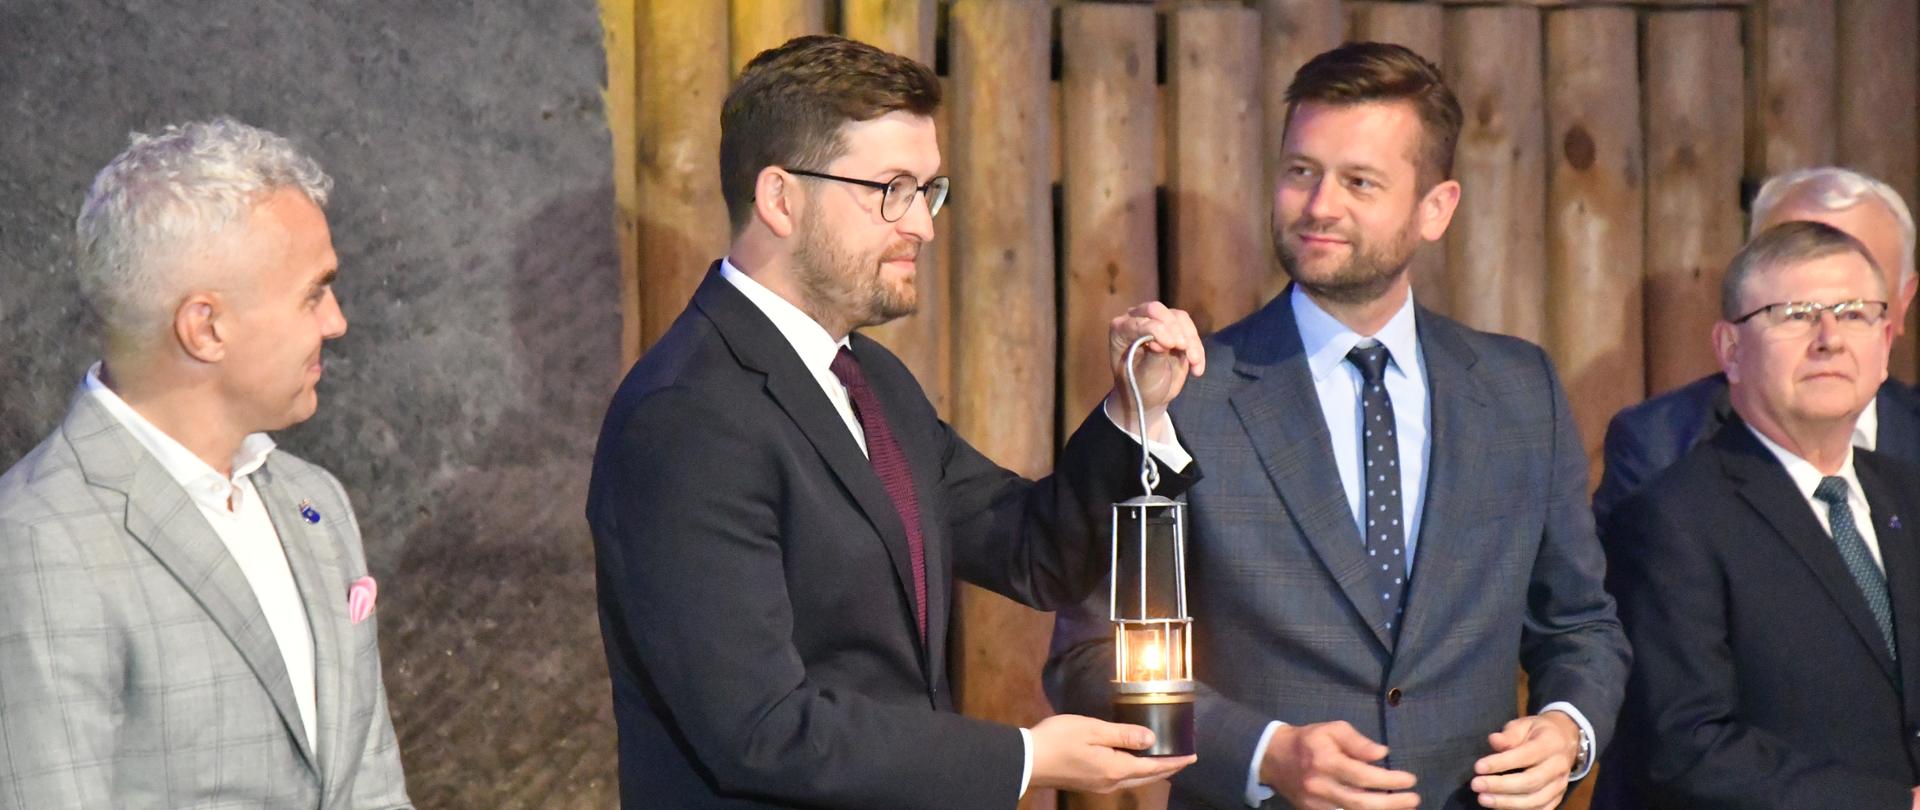 Wiceminister Andrzej Śliwka oraz minister sportu i turystyki Kamil Bortniczuk z Ogniem Pokoju. Obok stoją mężczyźni. 